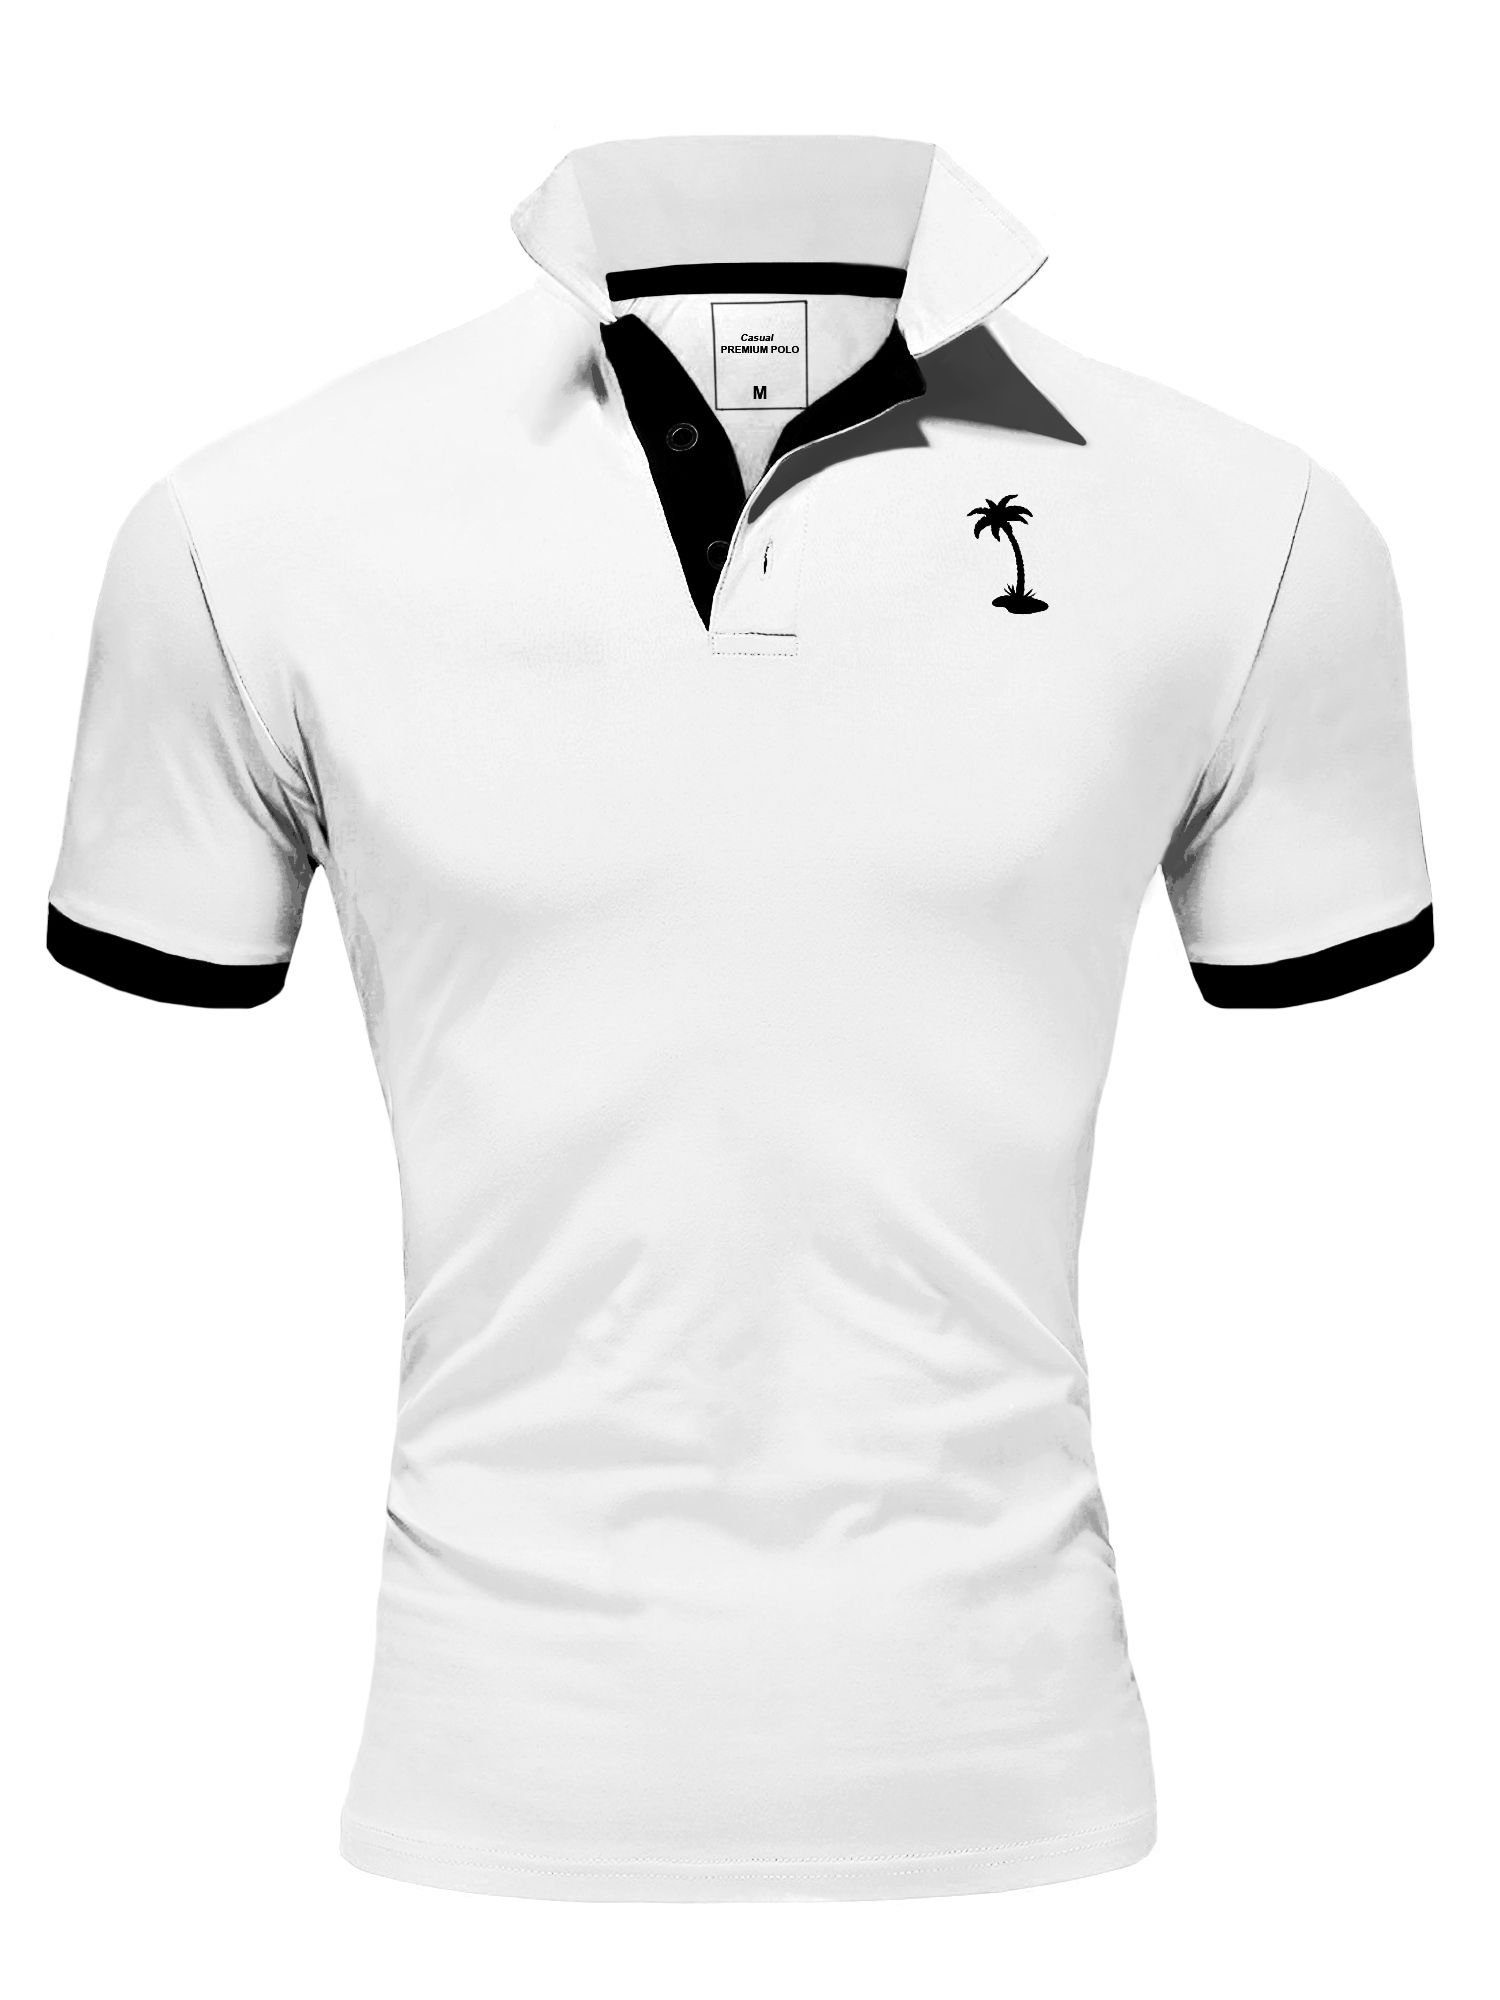 behype Poloshirt PALM mit kontrastfarbigen Details weiß-schwarz